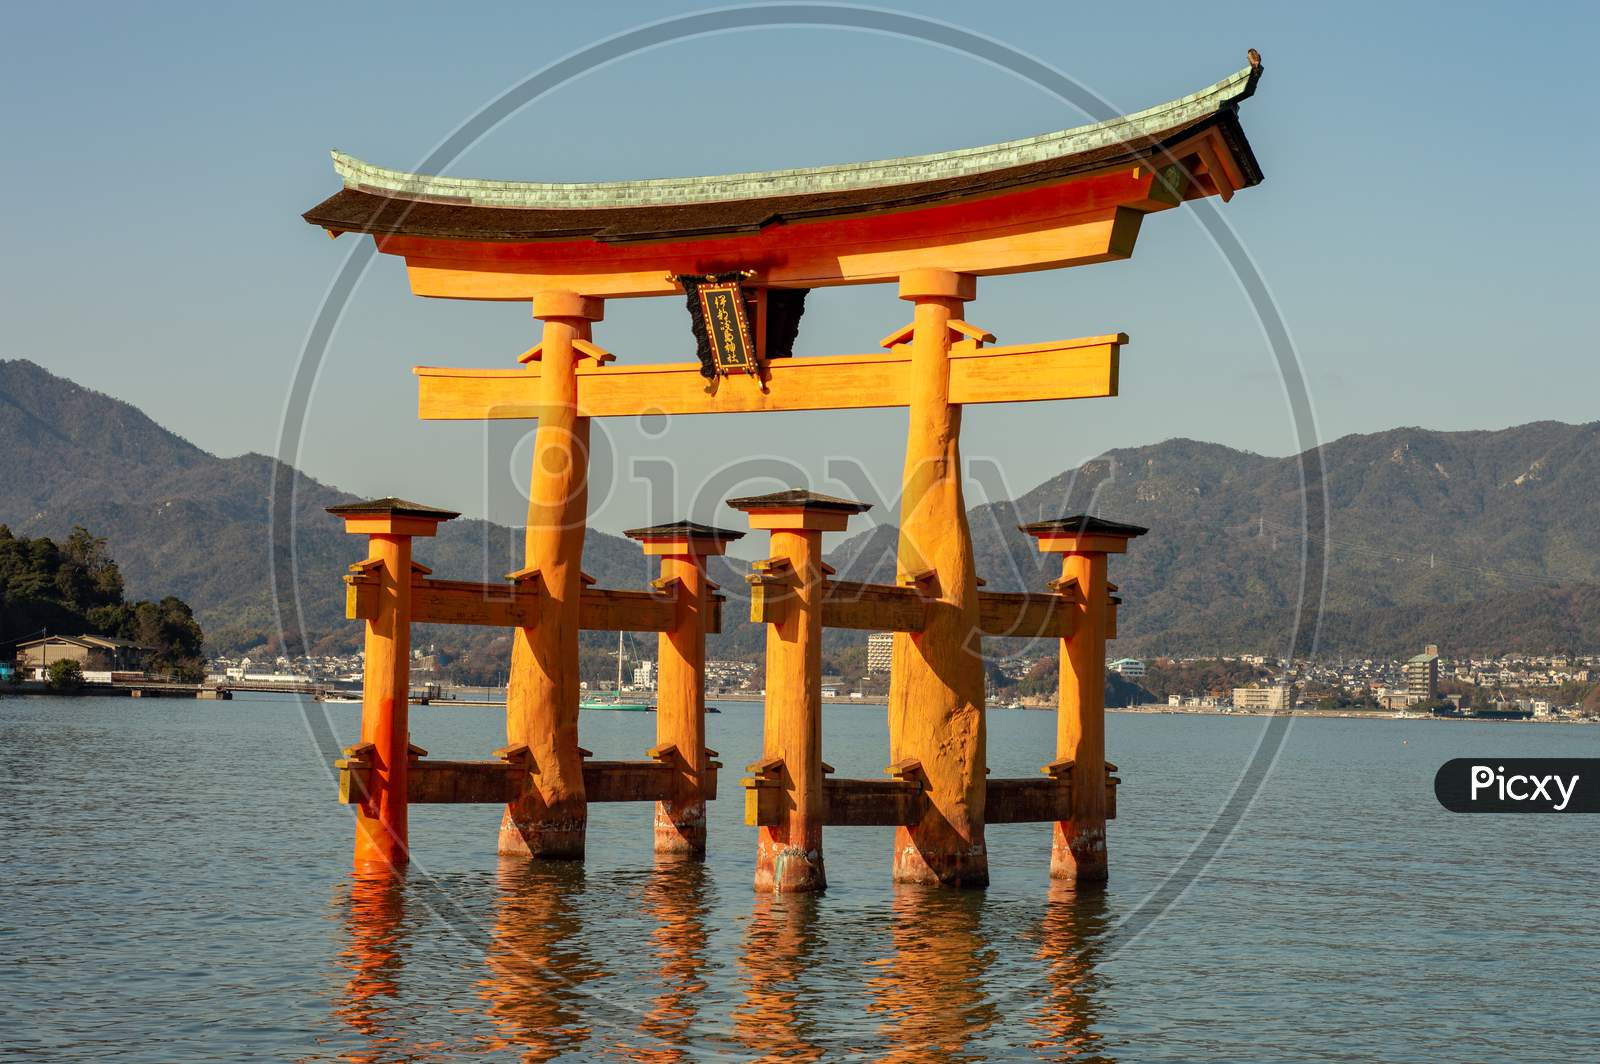 Itsukushima Shinto Shrine In Miyajima Island With Its Floating Torii Gate, Japan